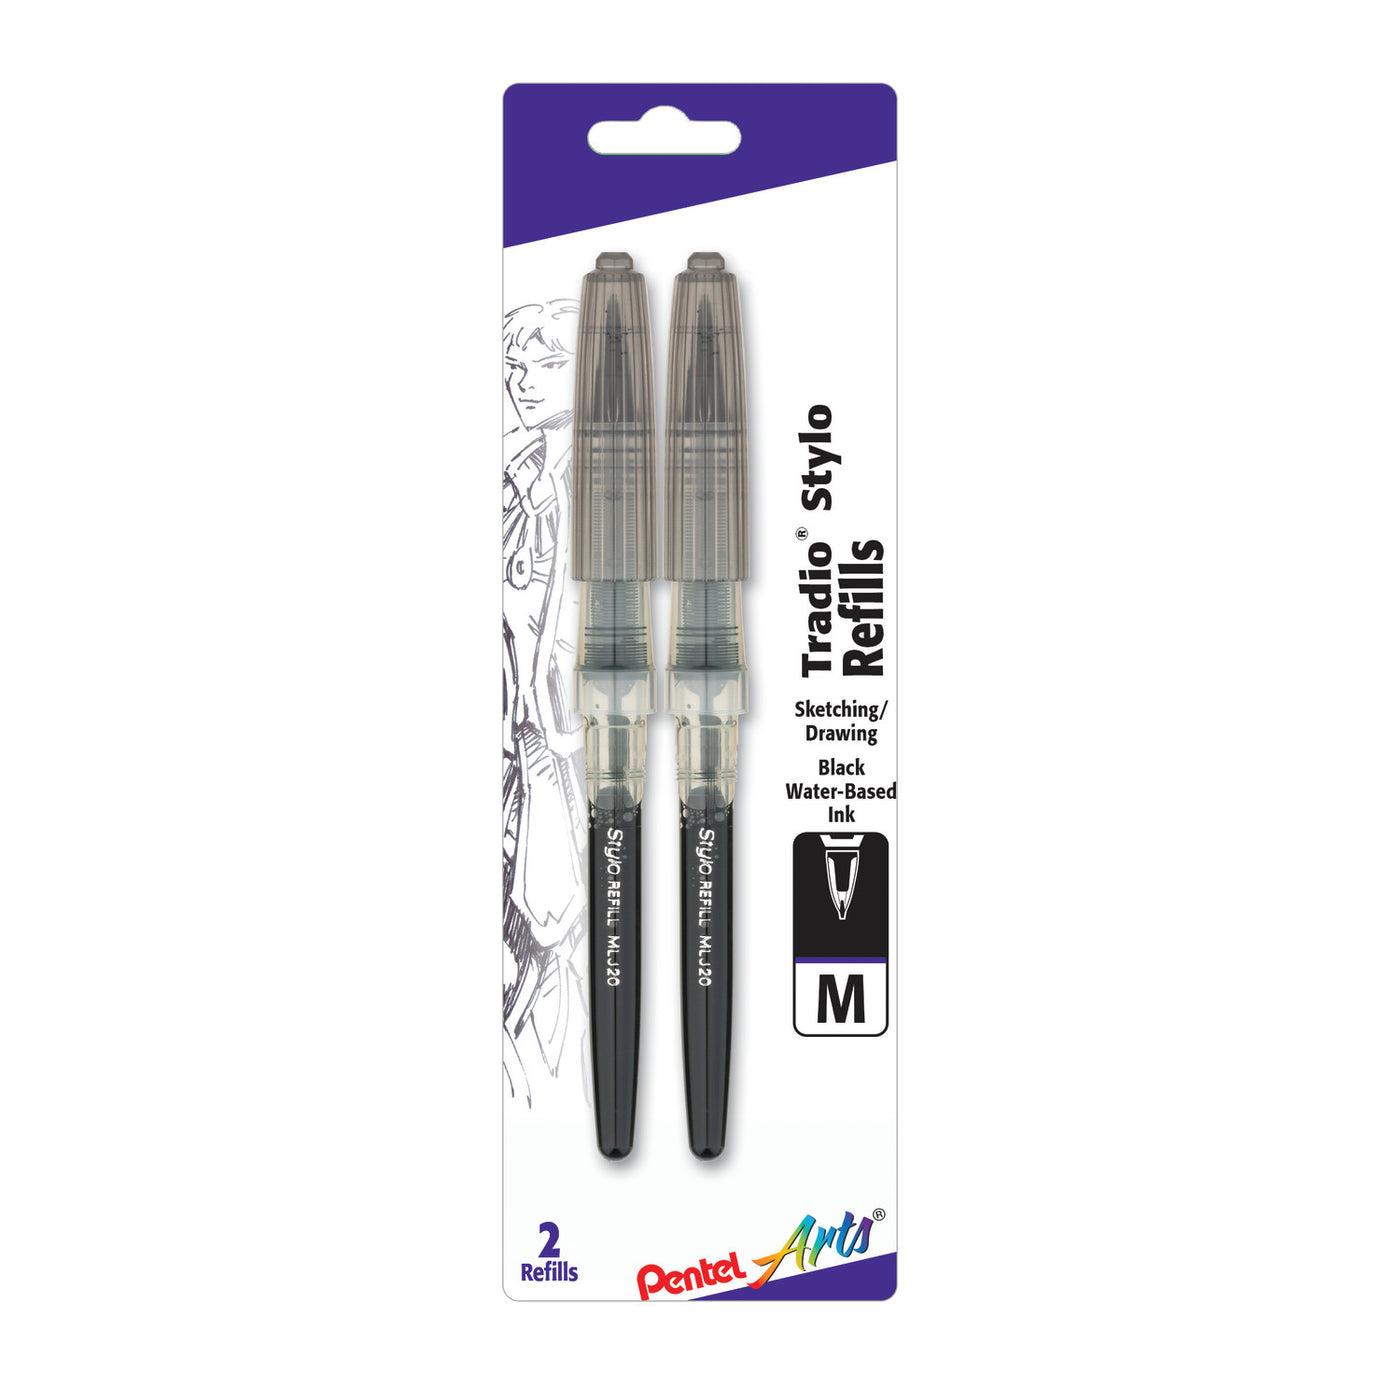 Pentel Tradio Stylo Sketch Pen Refill - 2 Pack